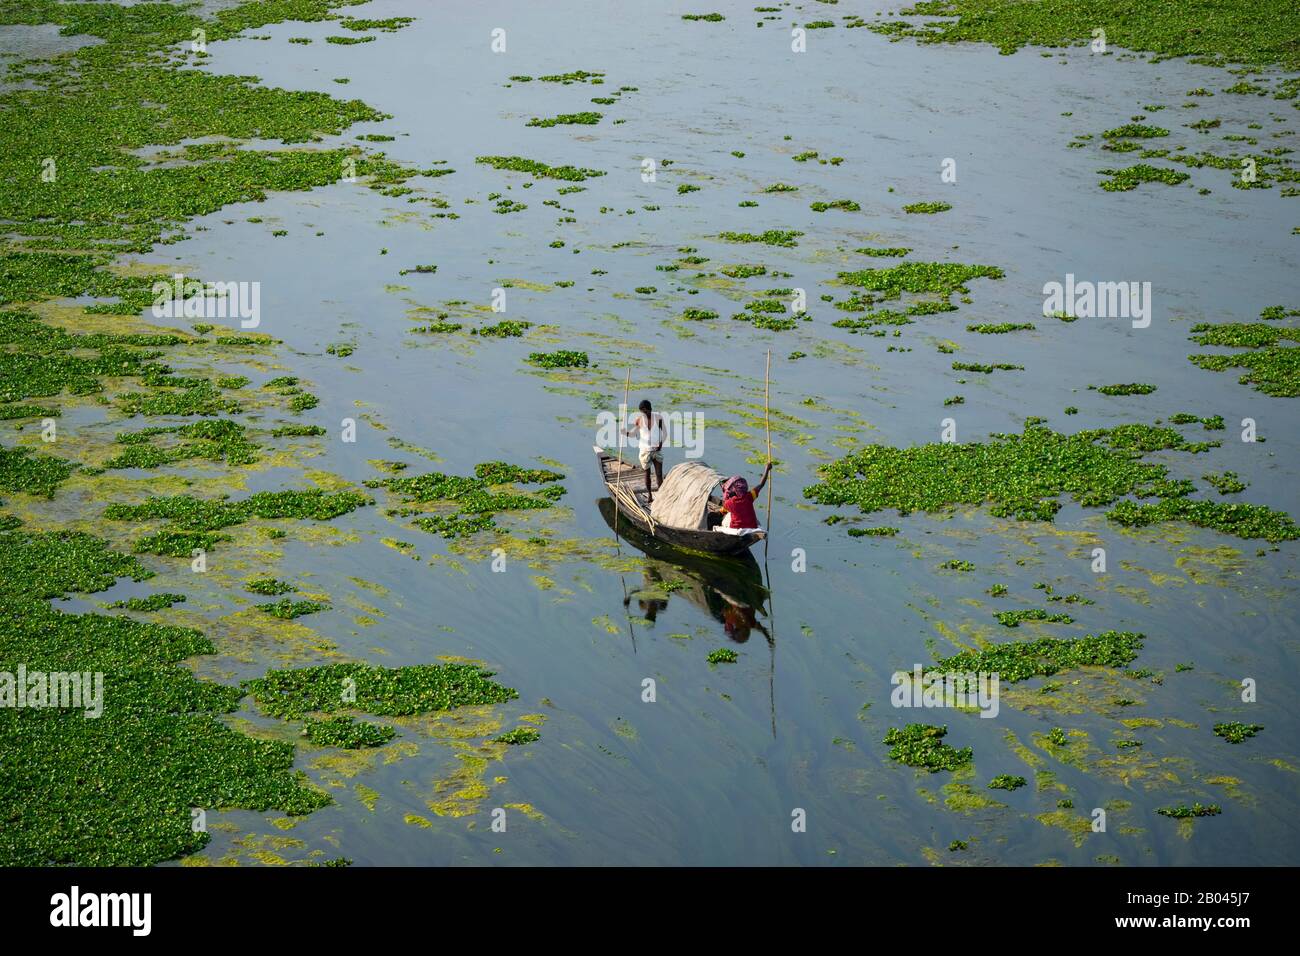 Pescatori alla ricerca di pesci in vecchio modo tradizionale (a cavallo su una barca) in Bangladesh. Foto Stock